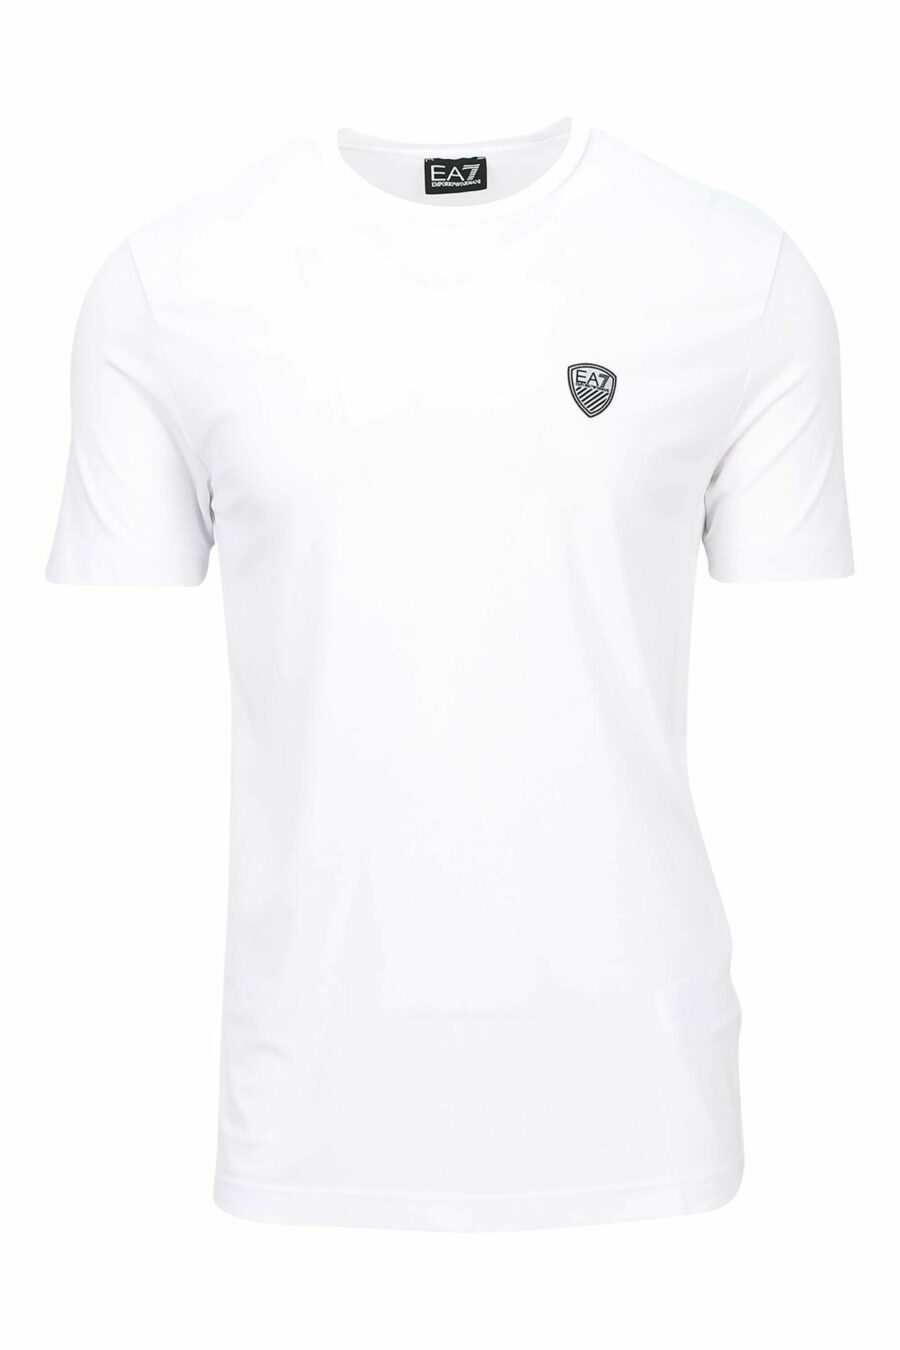 Camiseta blanca con minilogo escudo "lux identity" - 8056787978898 scaled